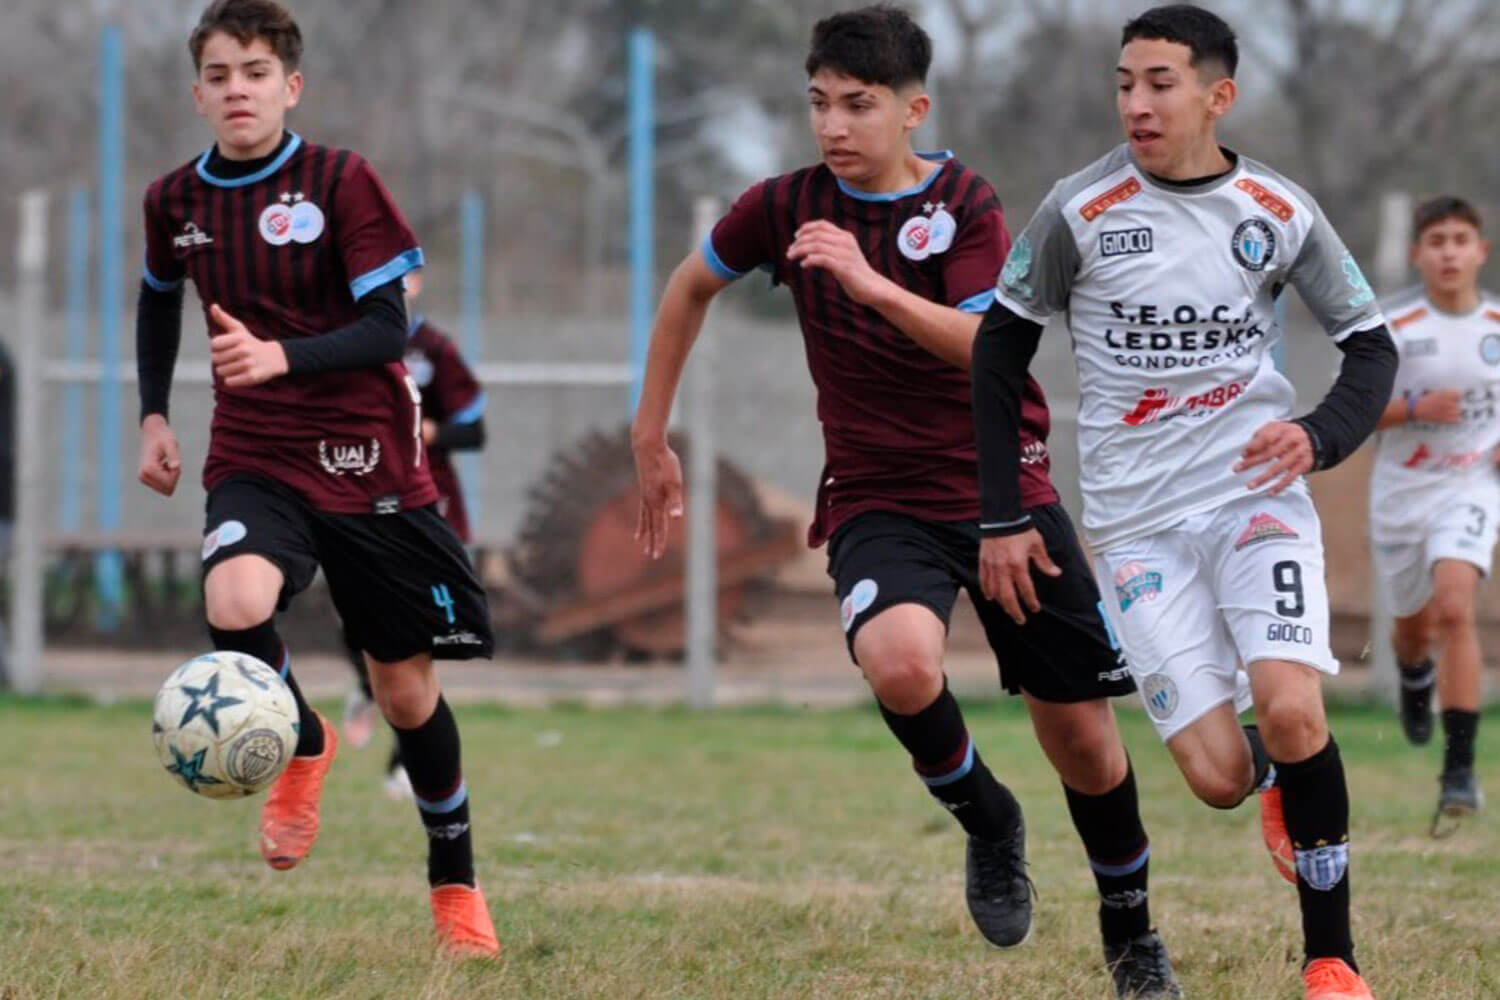 Club Deportivo UAI Urquiza - #Juveniles ⚽ Nuevas fechas de pruebas para  marzo ⚠ El Club Deportivo UAI Urquiza volverá a probar jugadores a partir  de esta semana en el Predio de